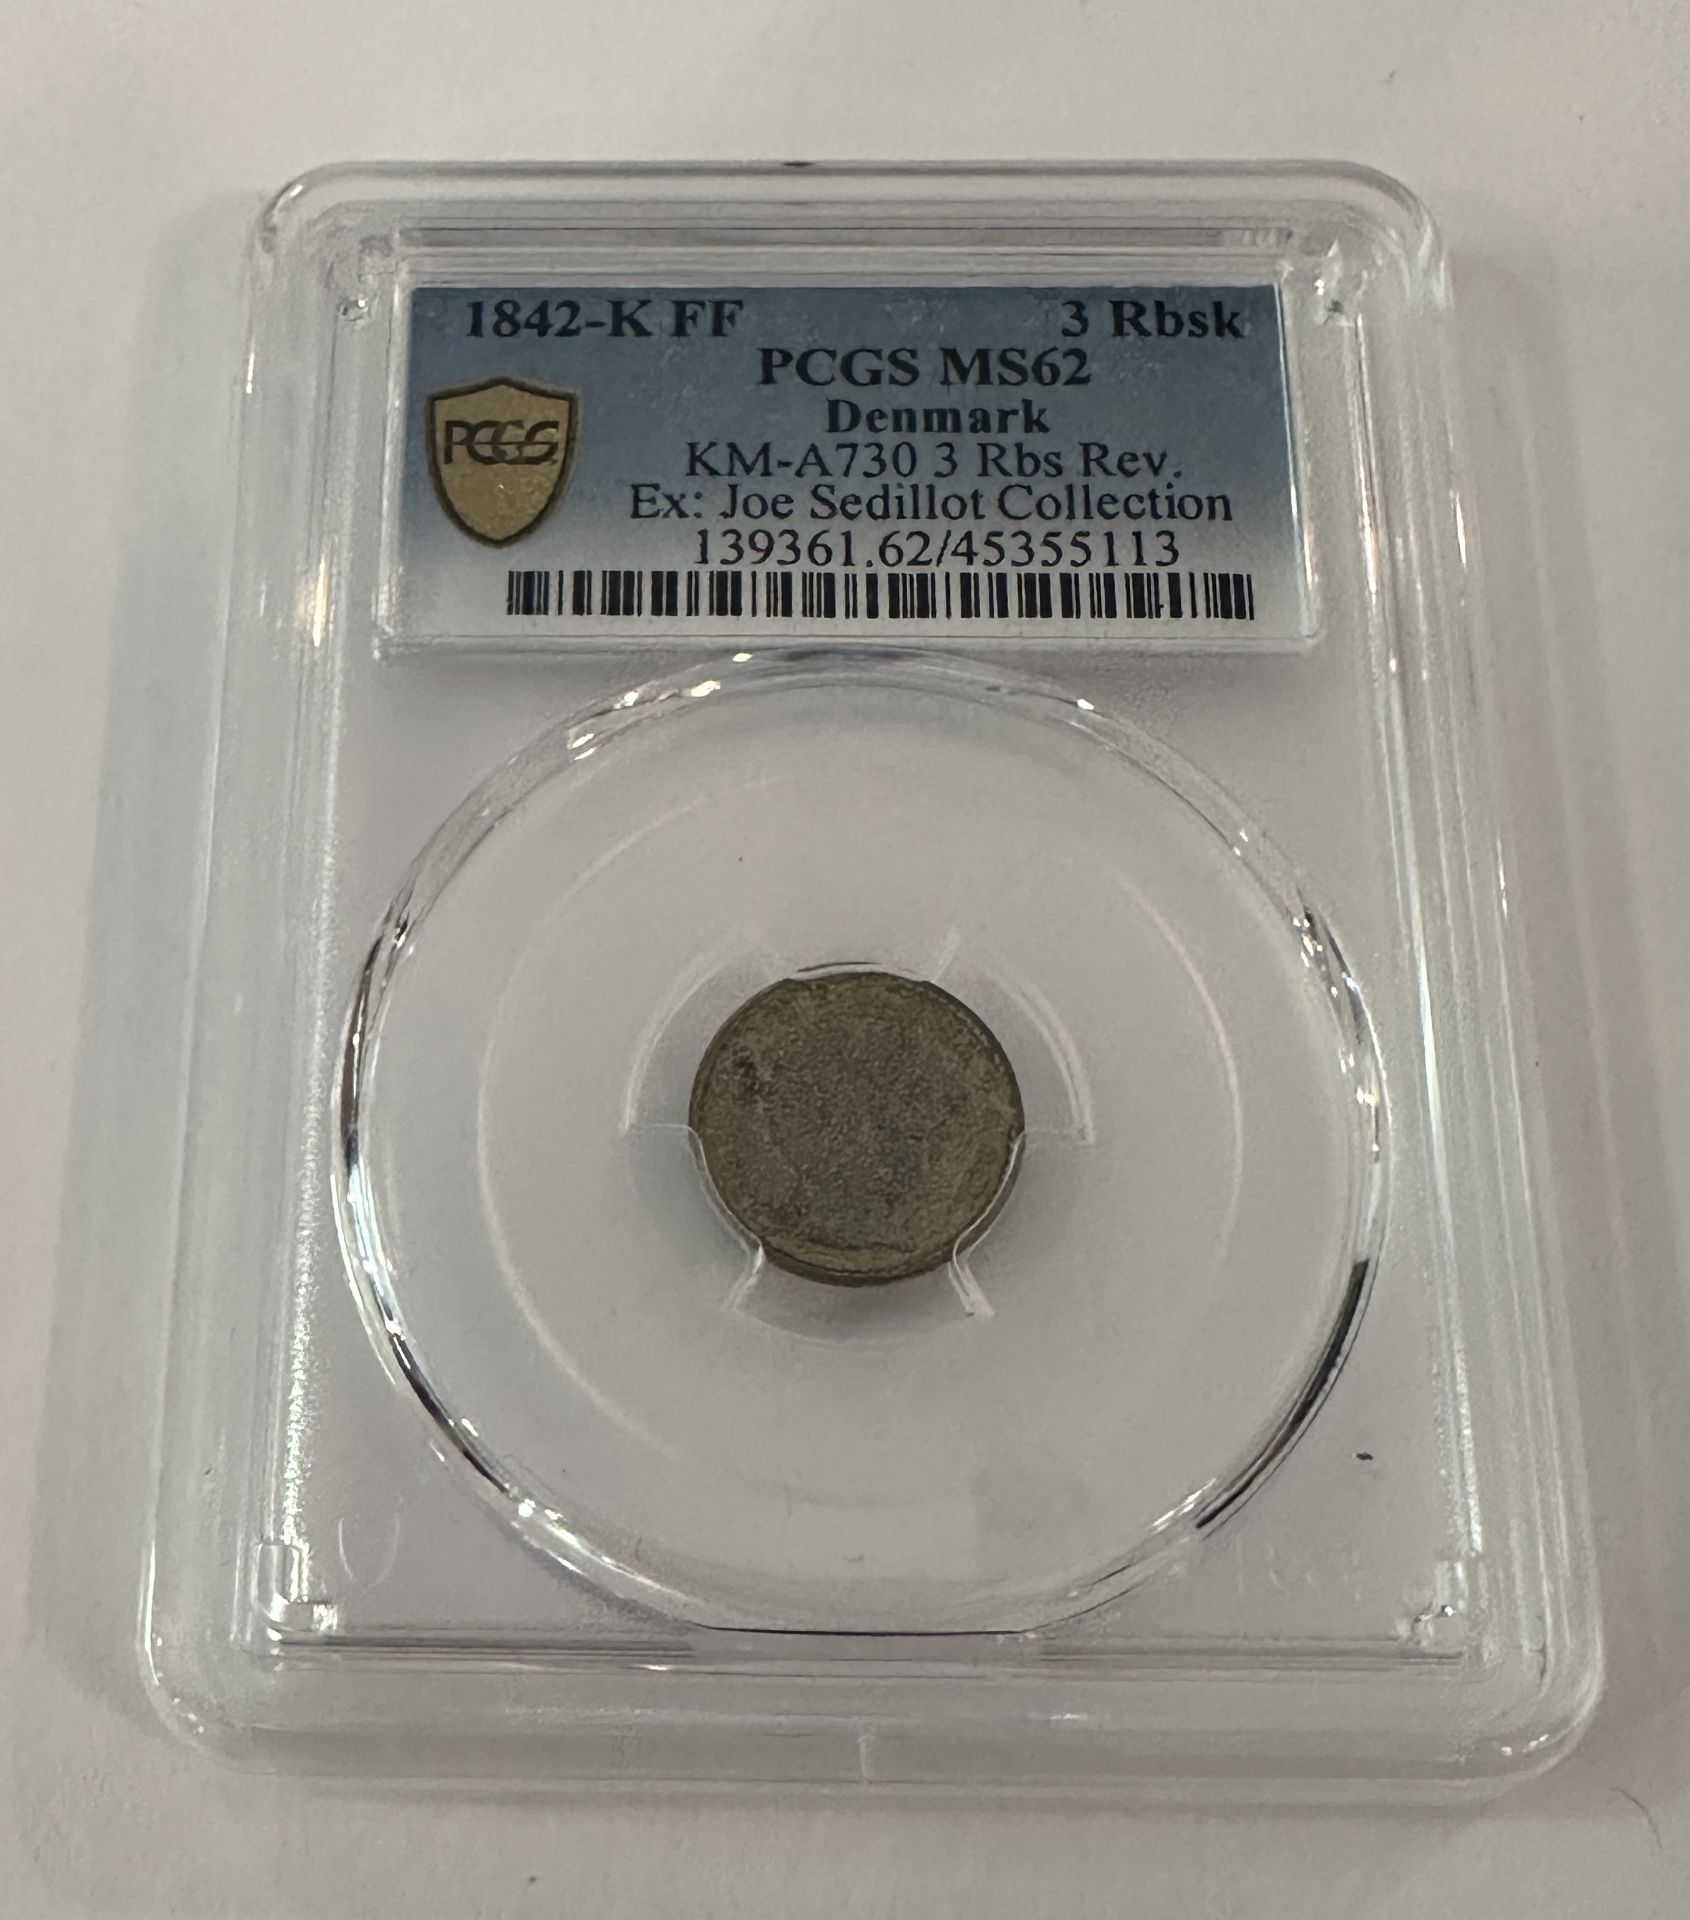 1842-K FF 3 Rbsk PCGS MS62 DENMARK COIN